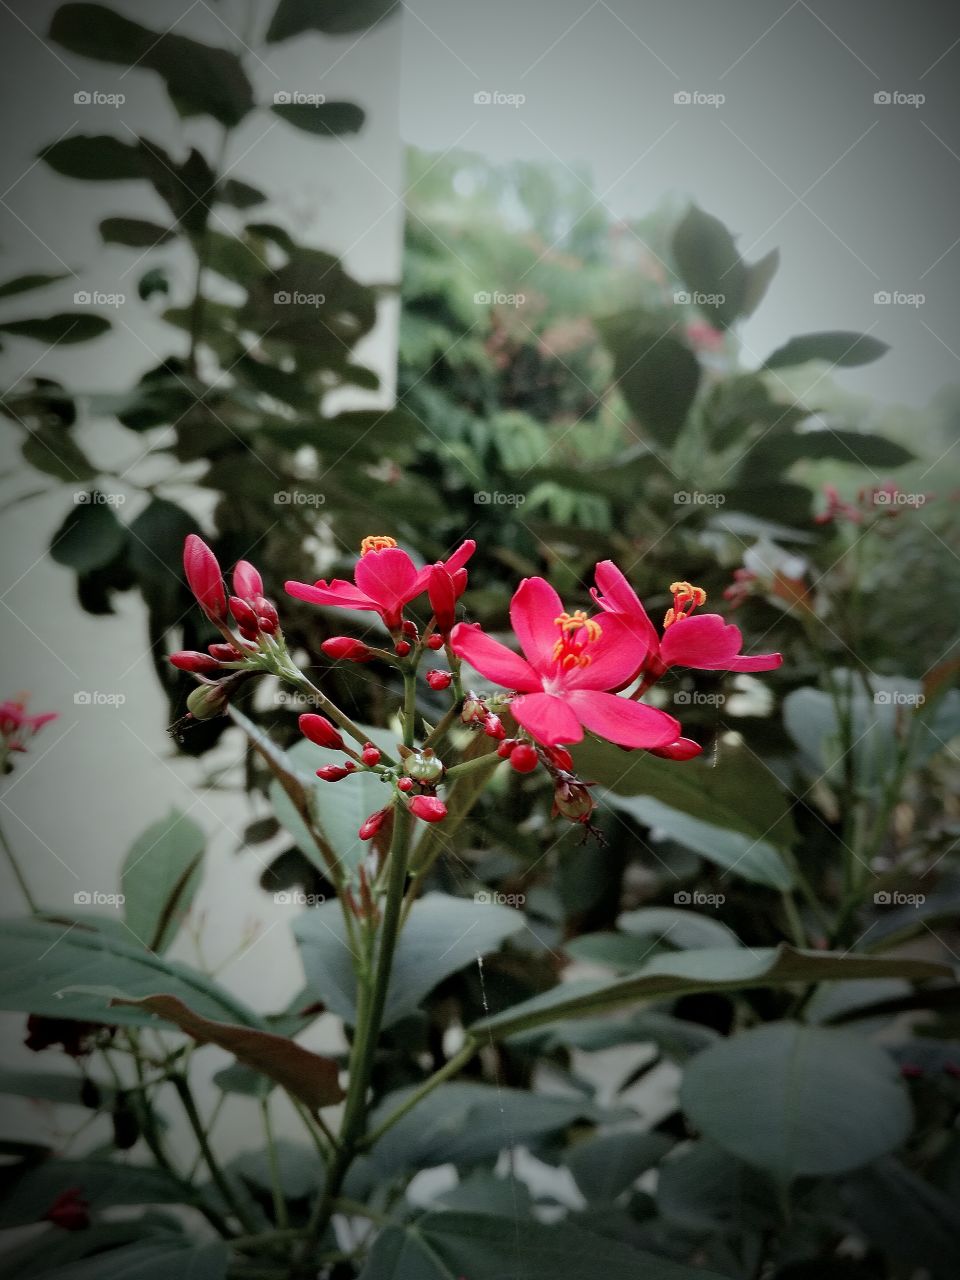 flower beauty